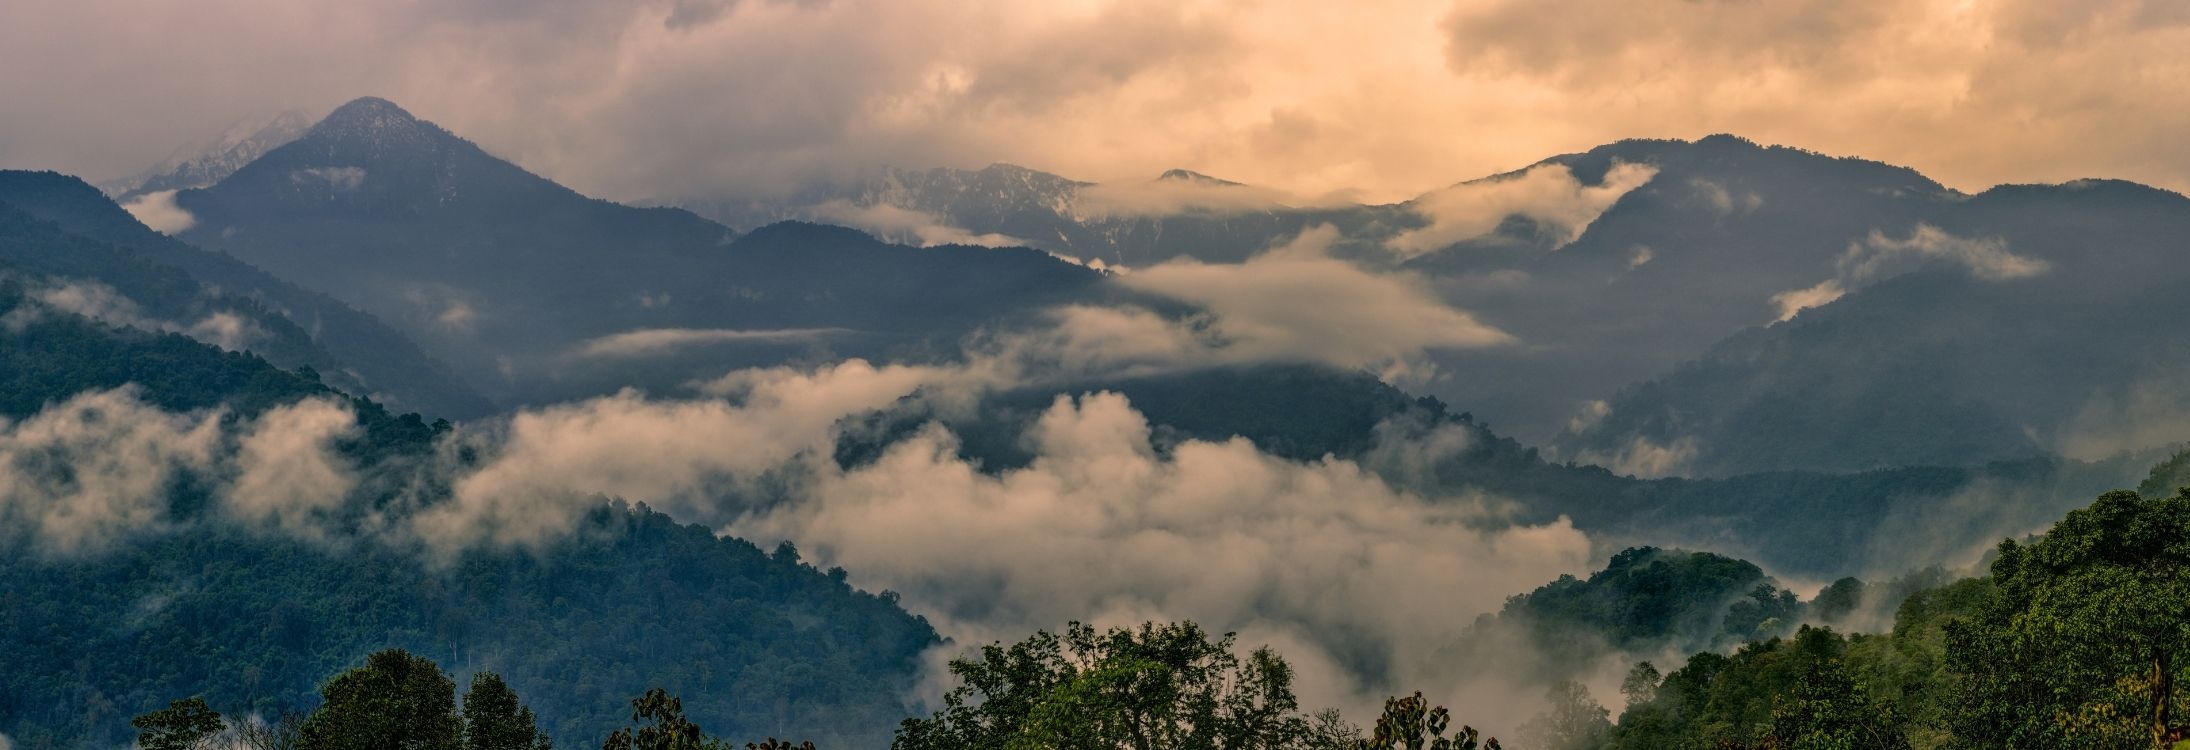 Ziro valley, Arunachal Pradesh